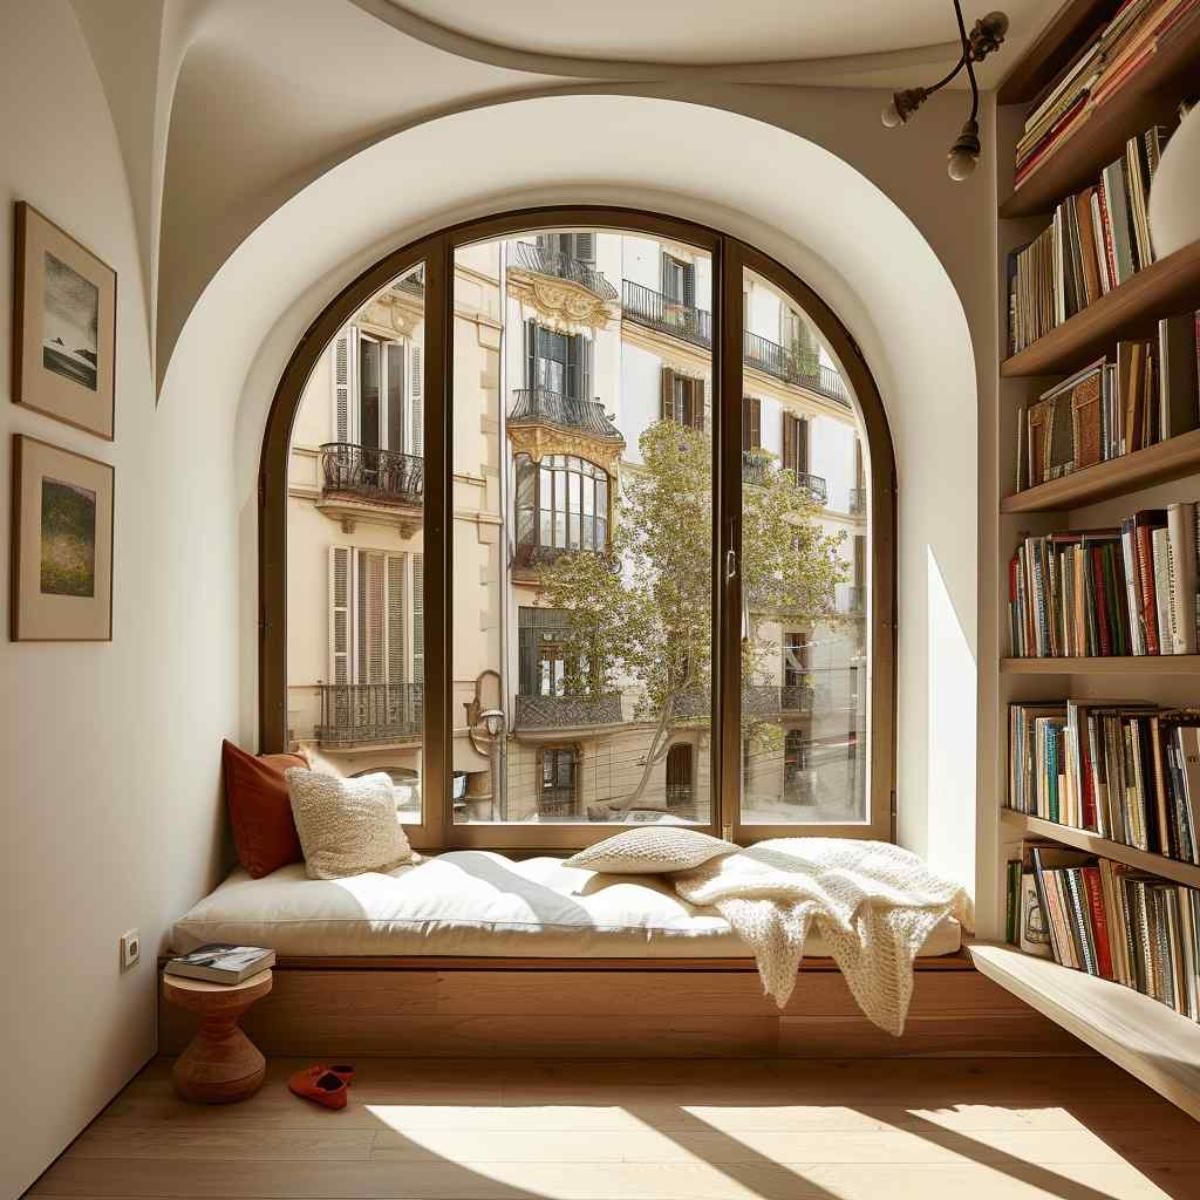 Nooks by The Window Cozy Reading Spot Beside the Window209“`